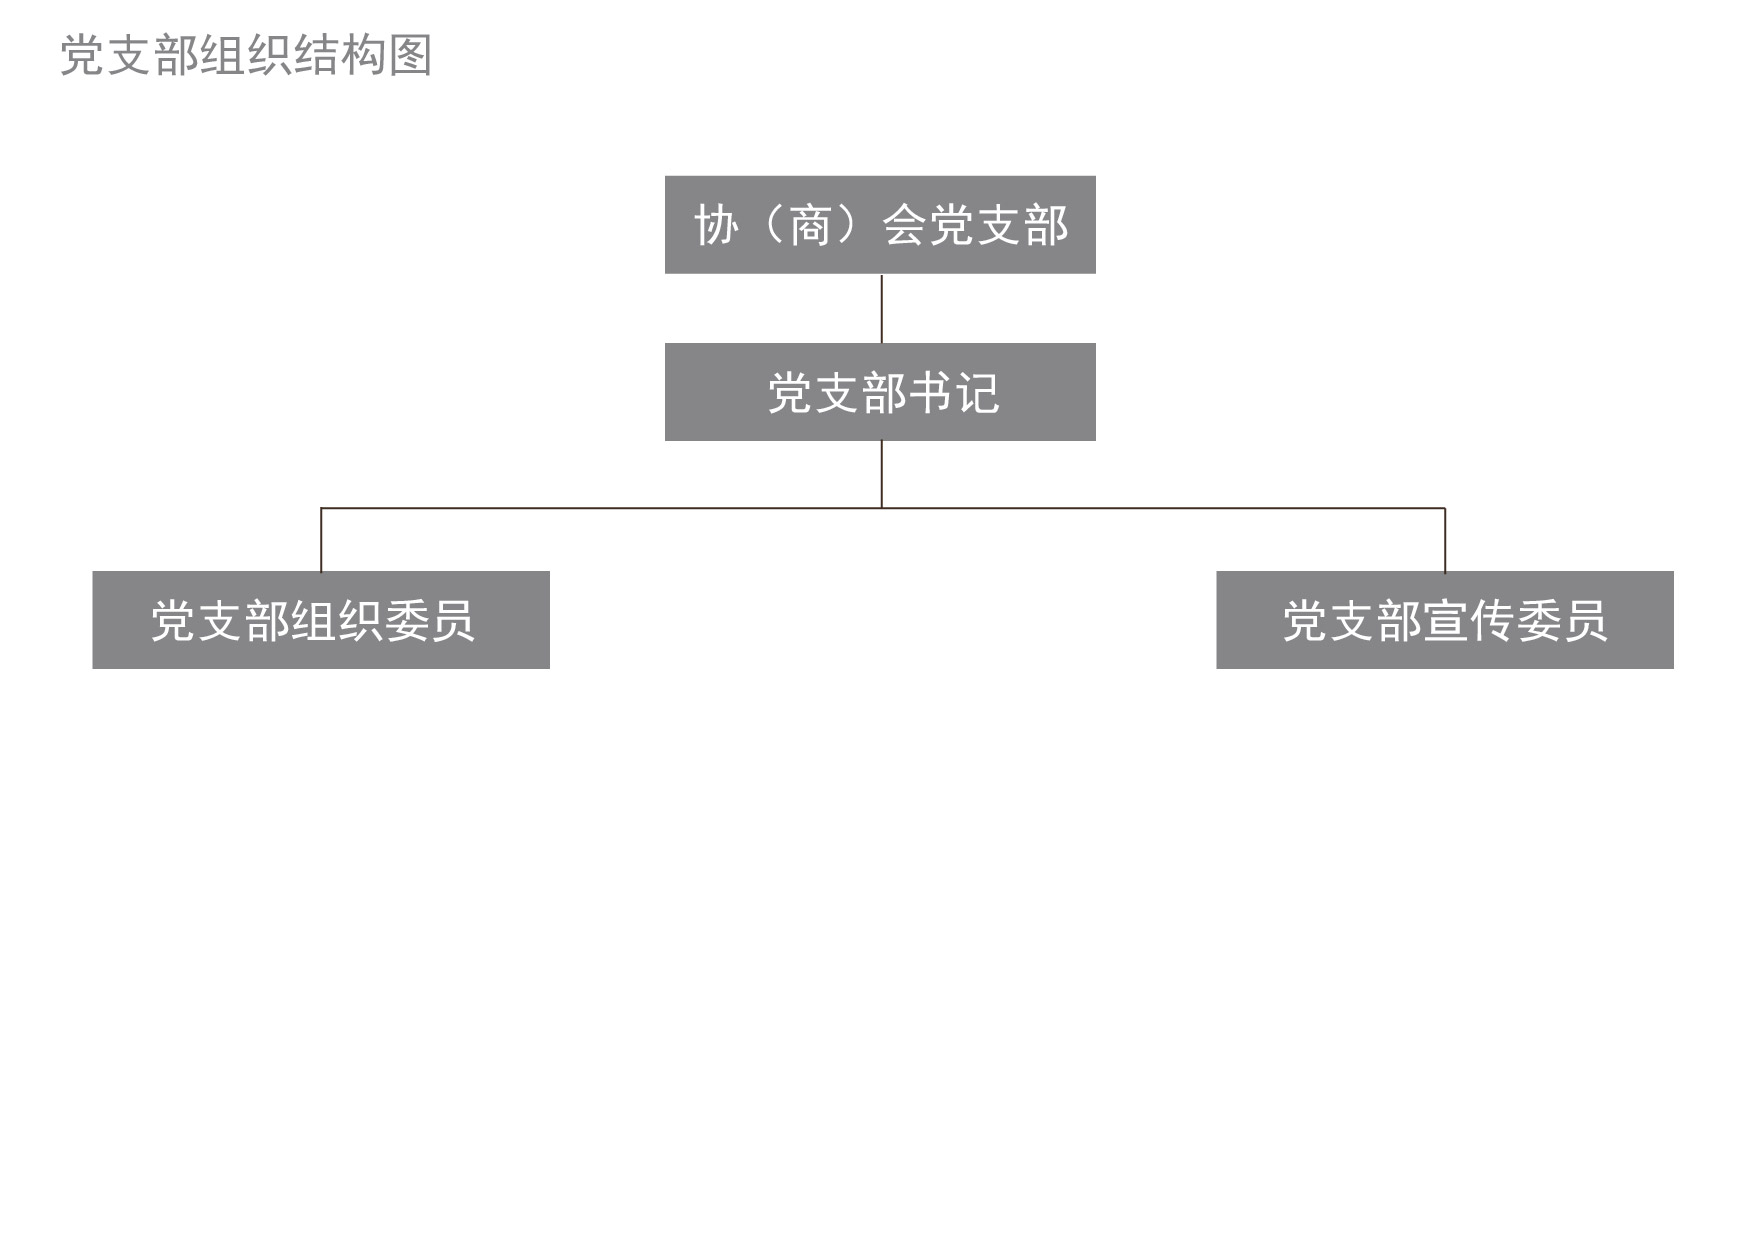 党支部组织架构图-01.jpg